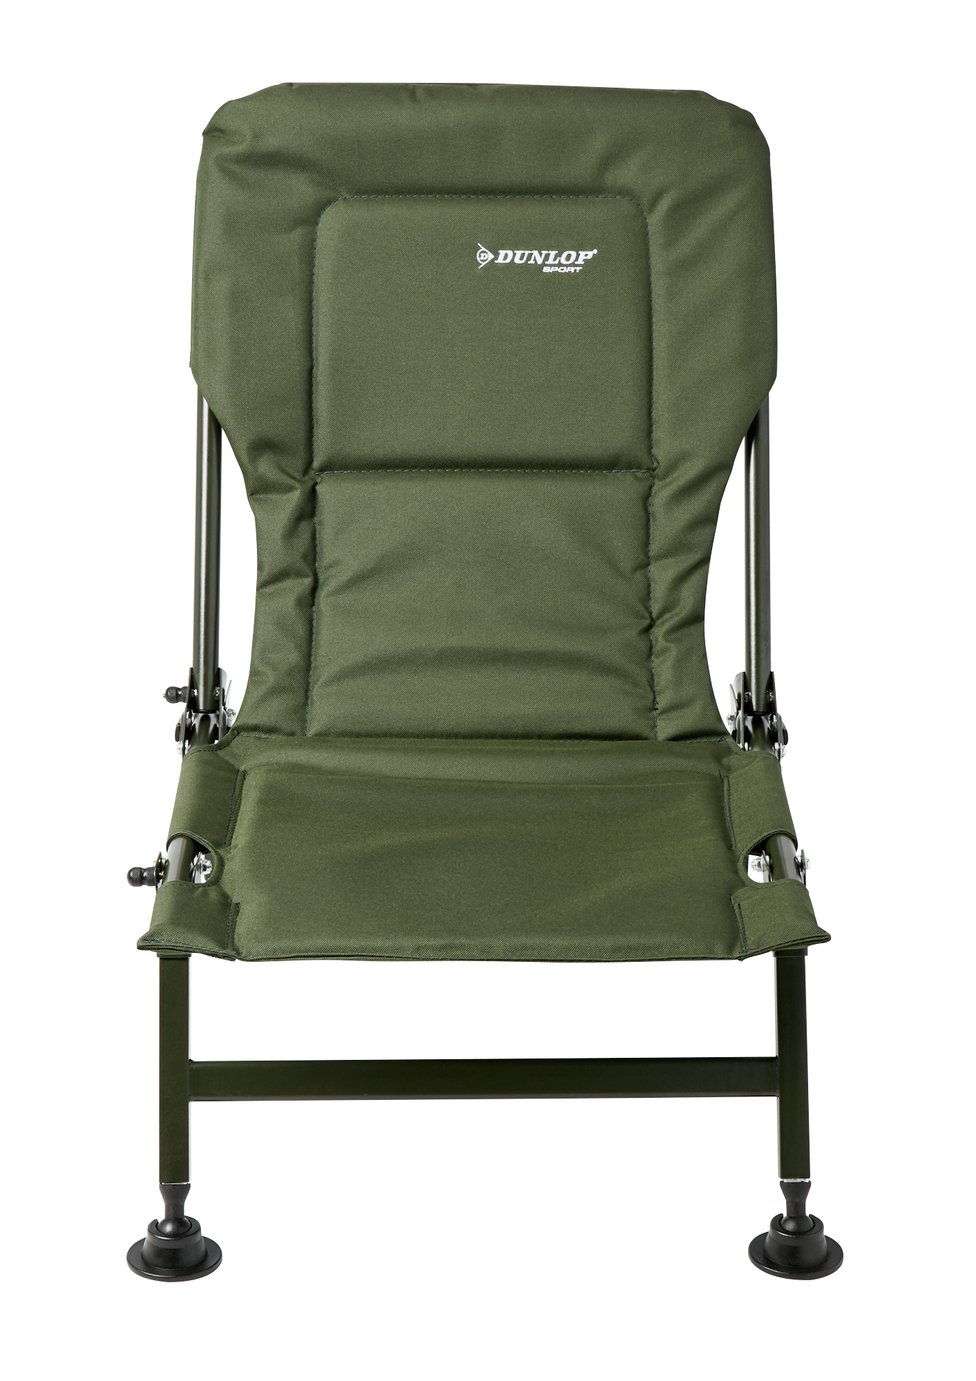 Dunlop Fishing Carp Chair